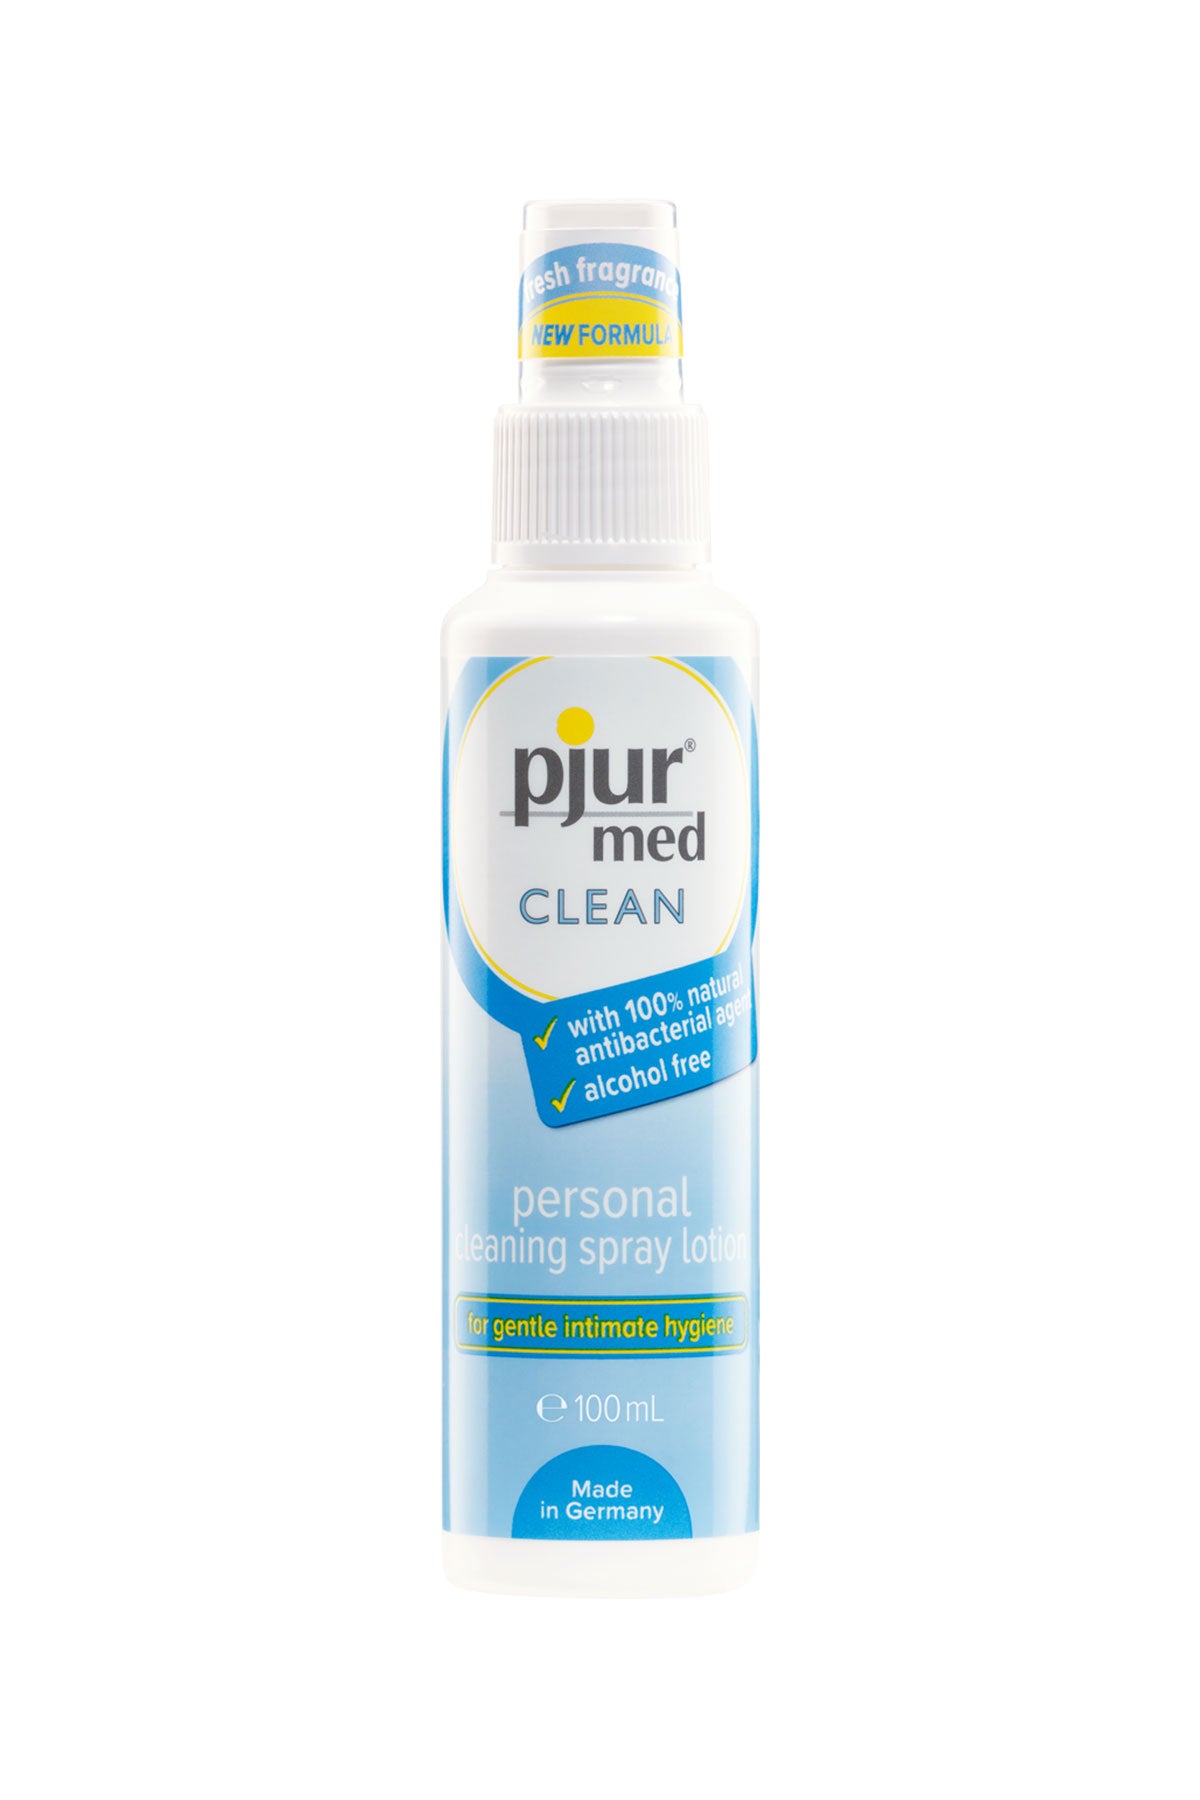 pjur Med Clean Spray 100ml | Matilda's